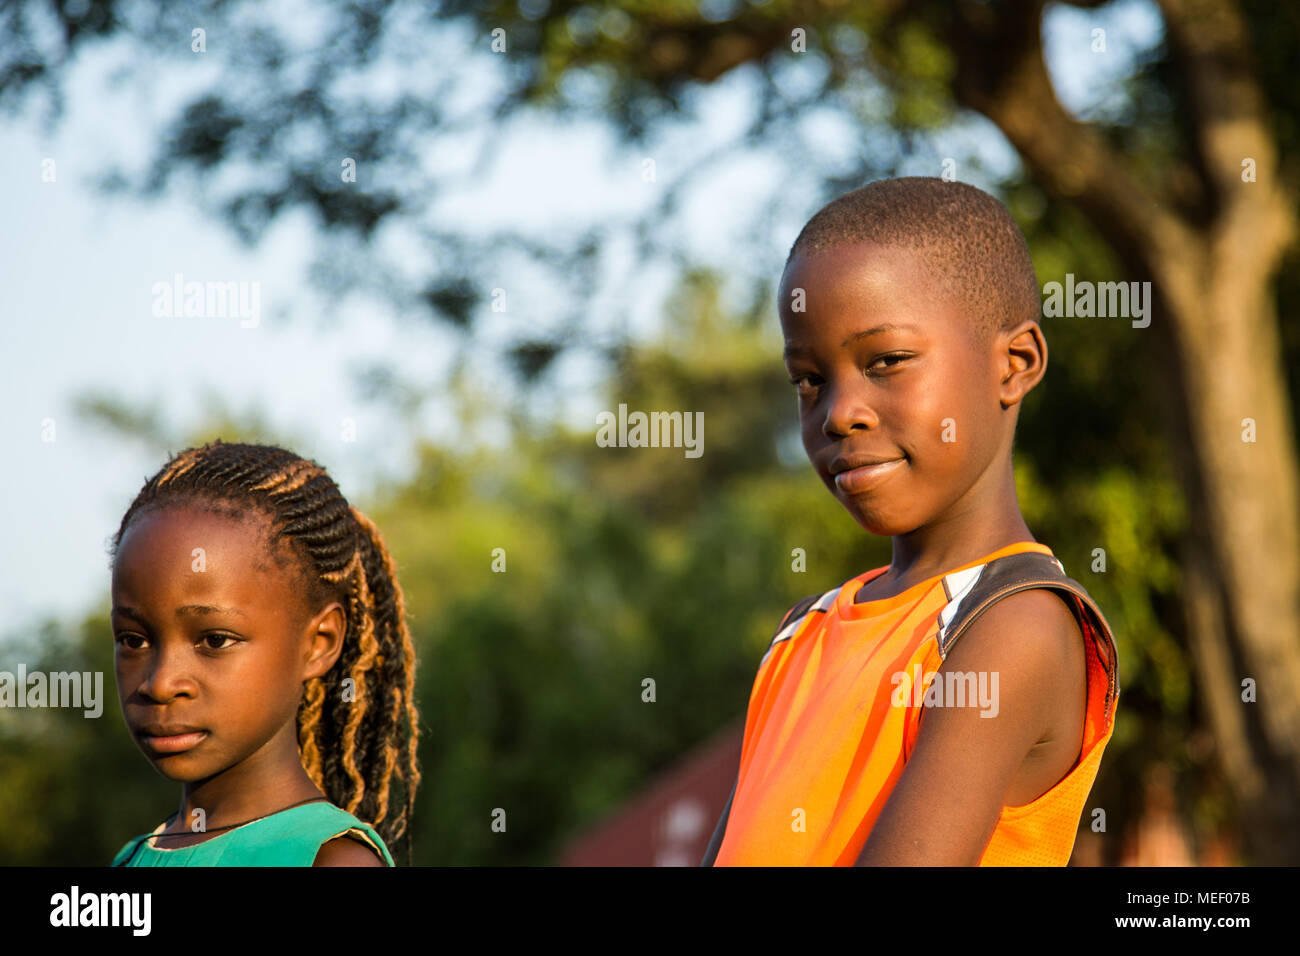 Retratos de 2 niños en la naturaleza, Uganda Foto de stock